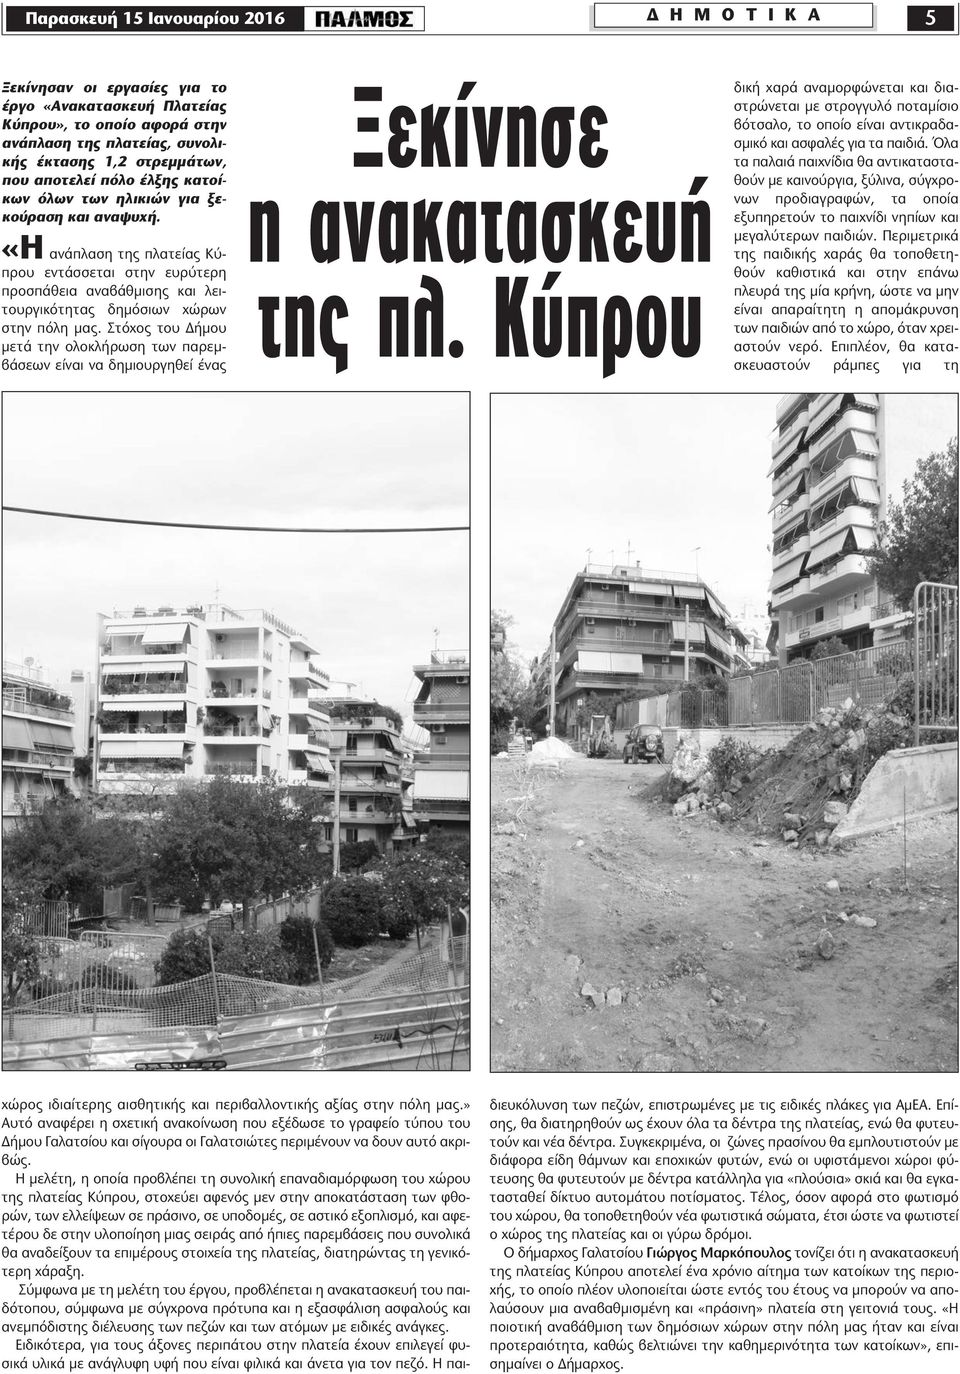 «Η ανάπλαση της πλατείας Κύπρου εντάσσεται στην ευρύτερη προσπάθεια αναβάθµισης και λειτουργικότητας δηµόσιων χώρων στην πόλη µας.